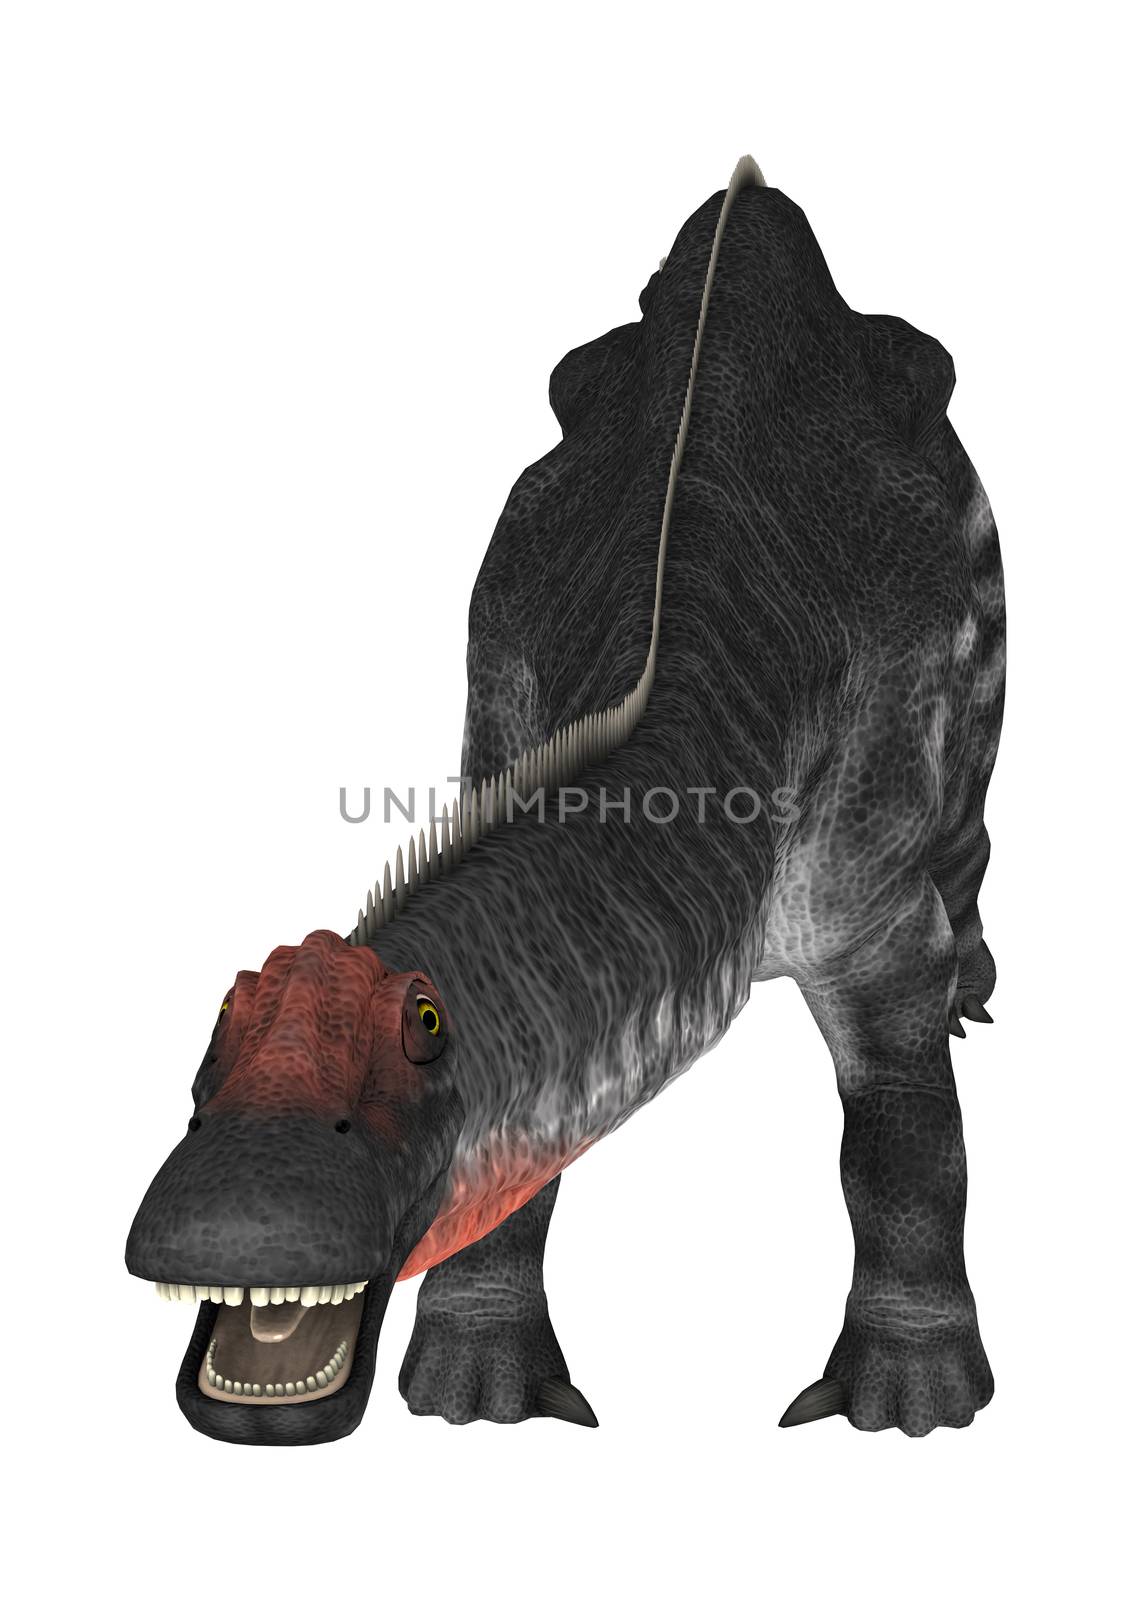 Dinosaur Apatosaurus by Vac